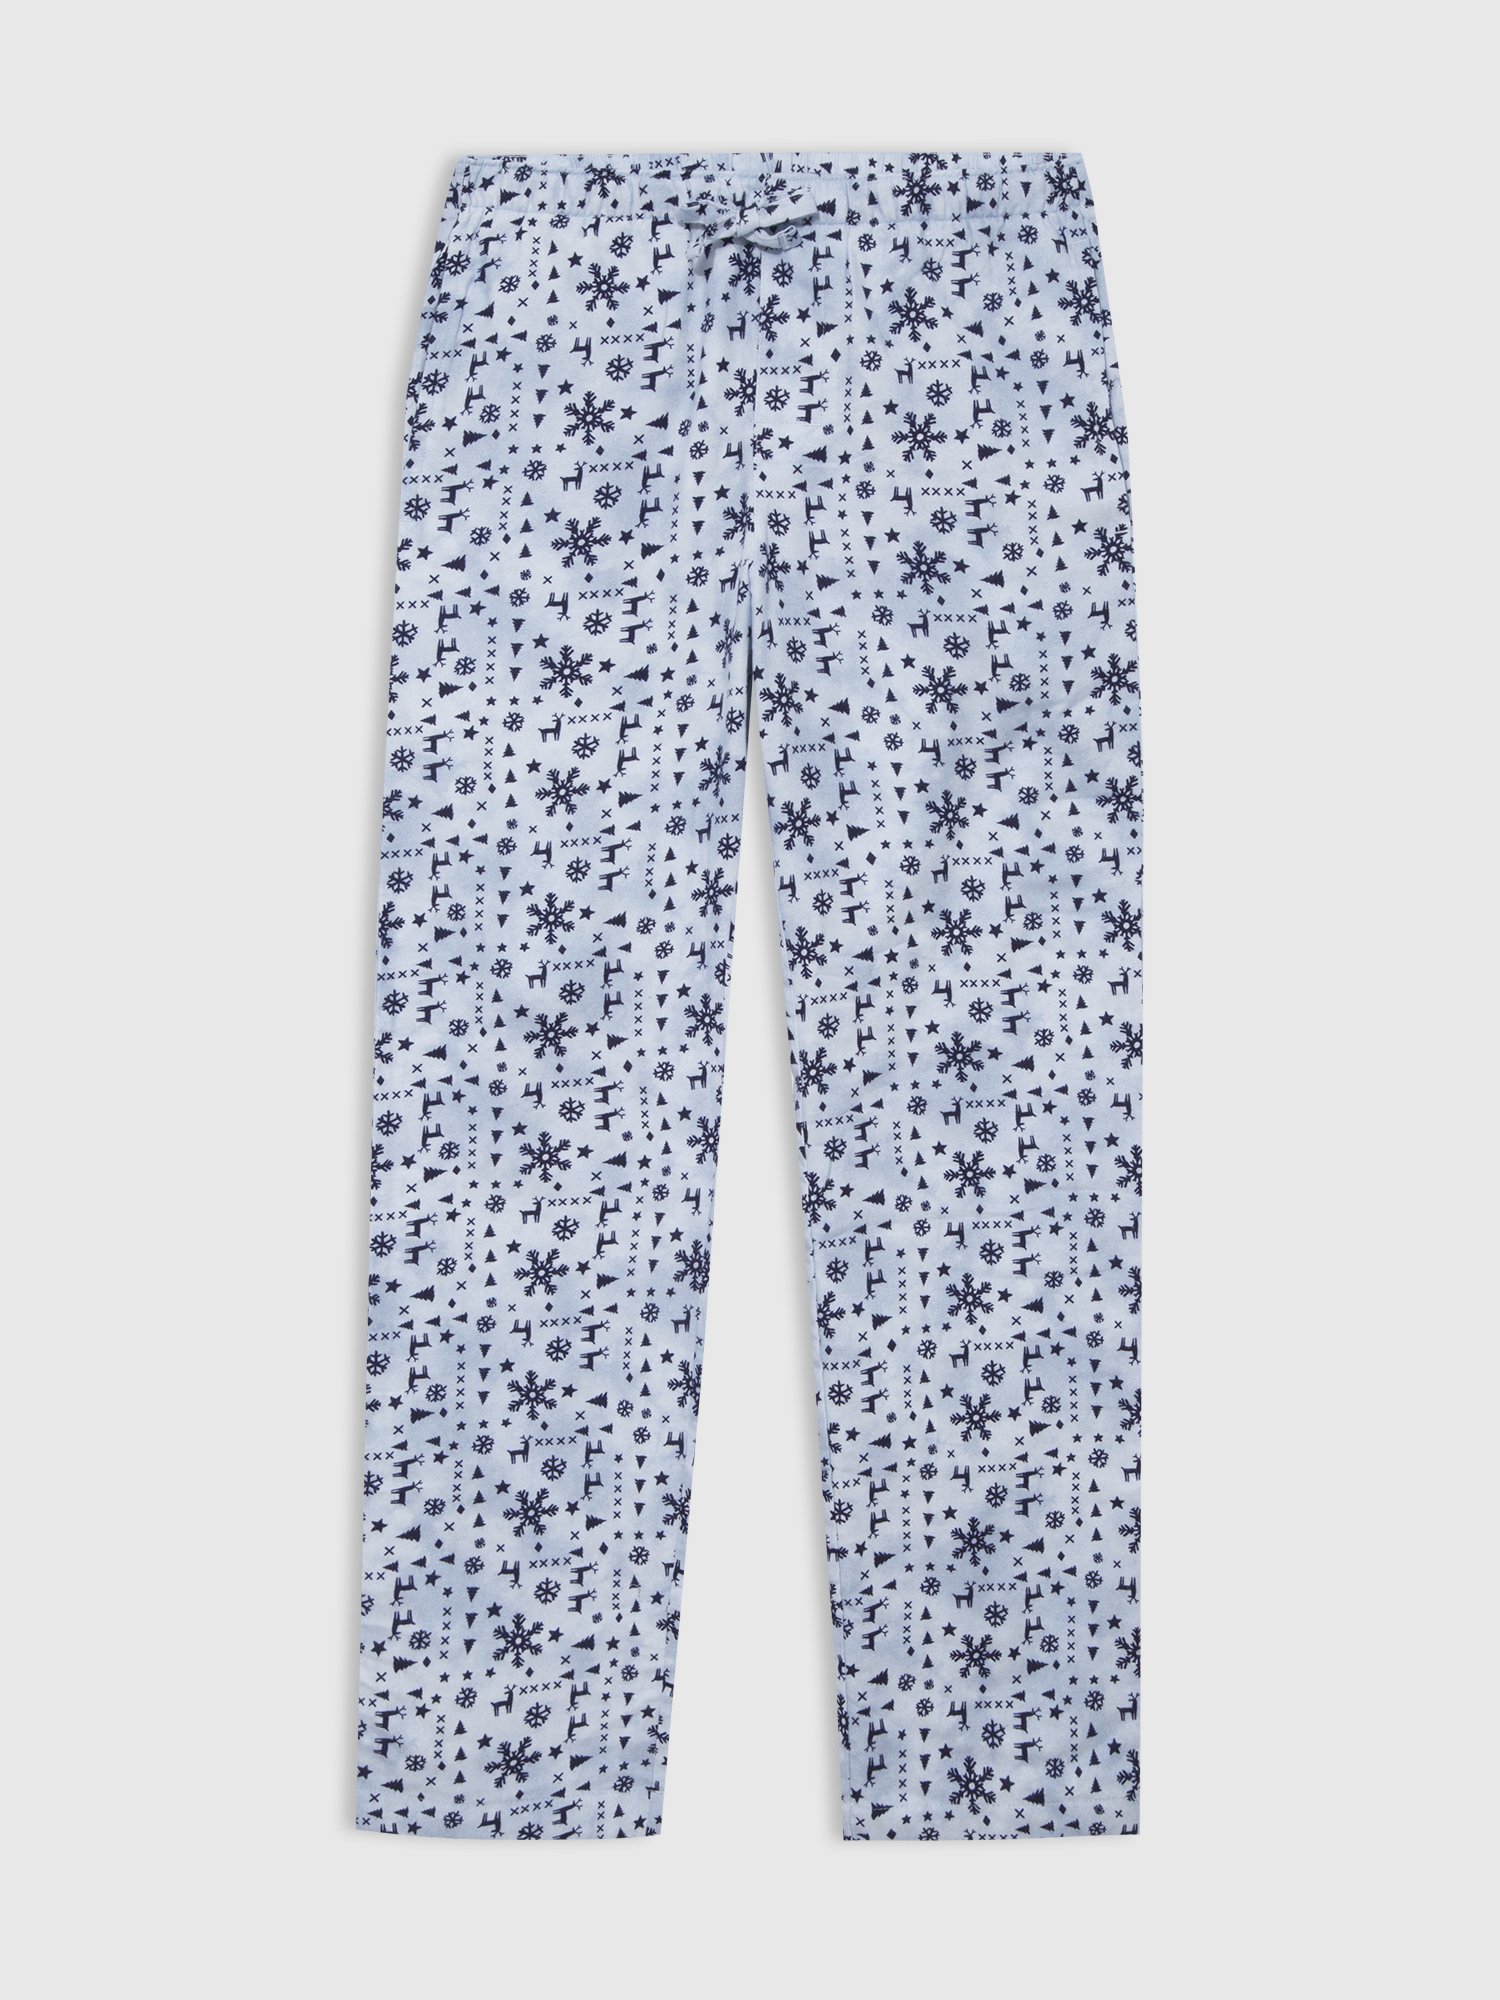 Baskılı Flannel Pijama Altı product image